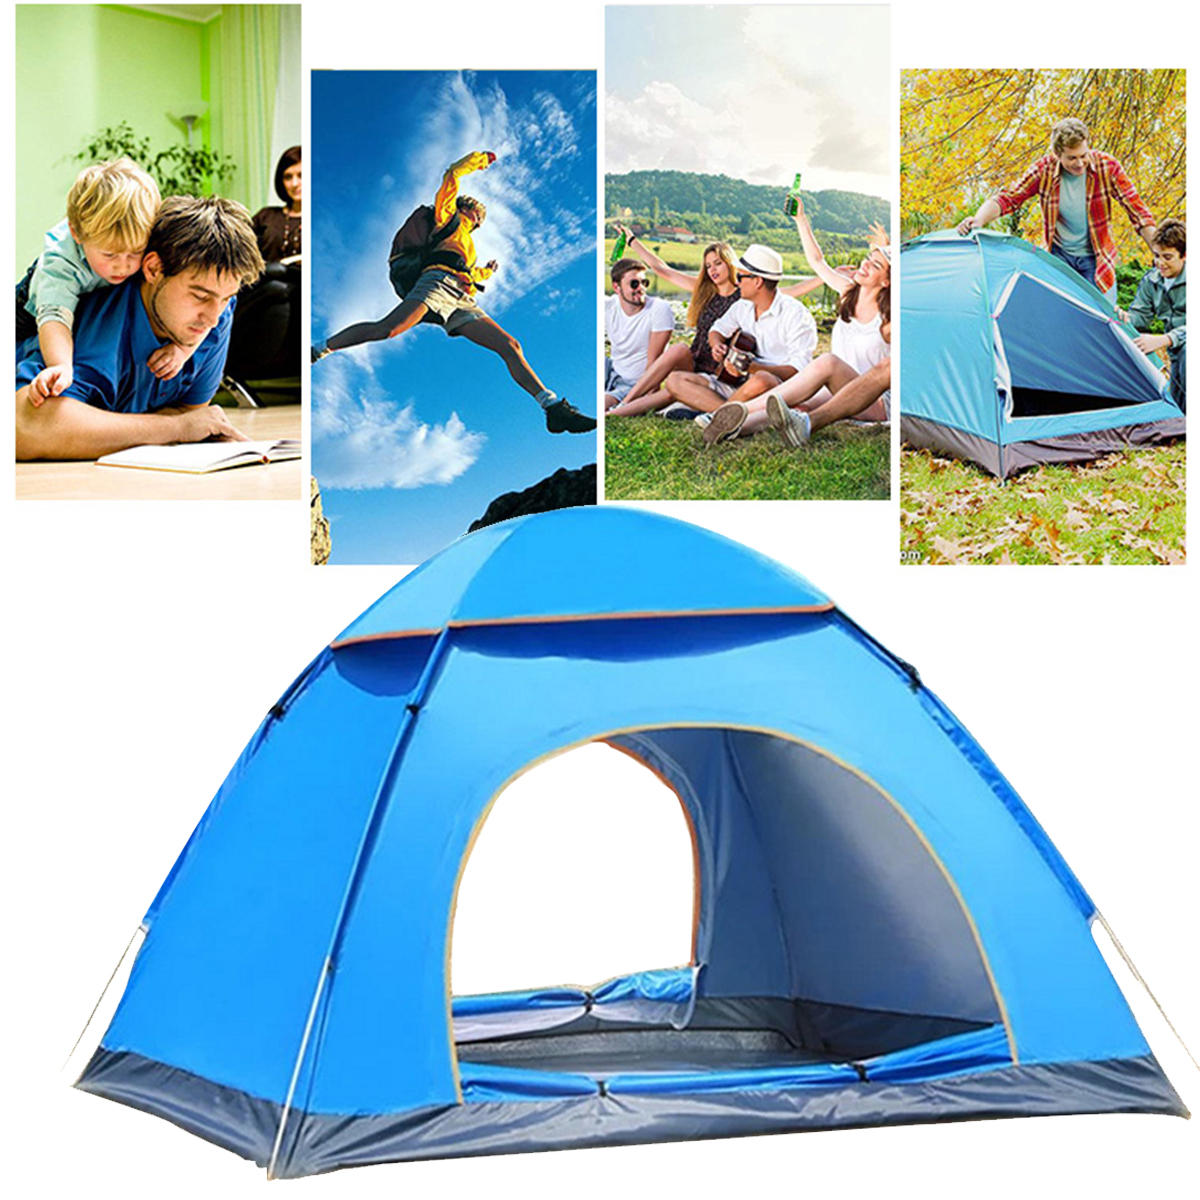 Tenda de acampamento Dome para 3-4 pessoas com porta dupla, à prova d'água em poliéster, ideal para viagens à praia e caminhadas.